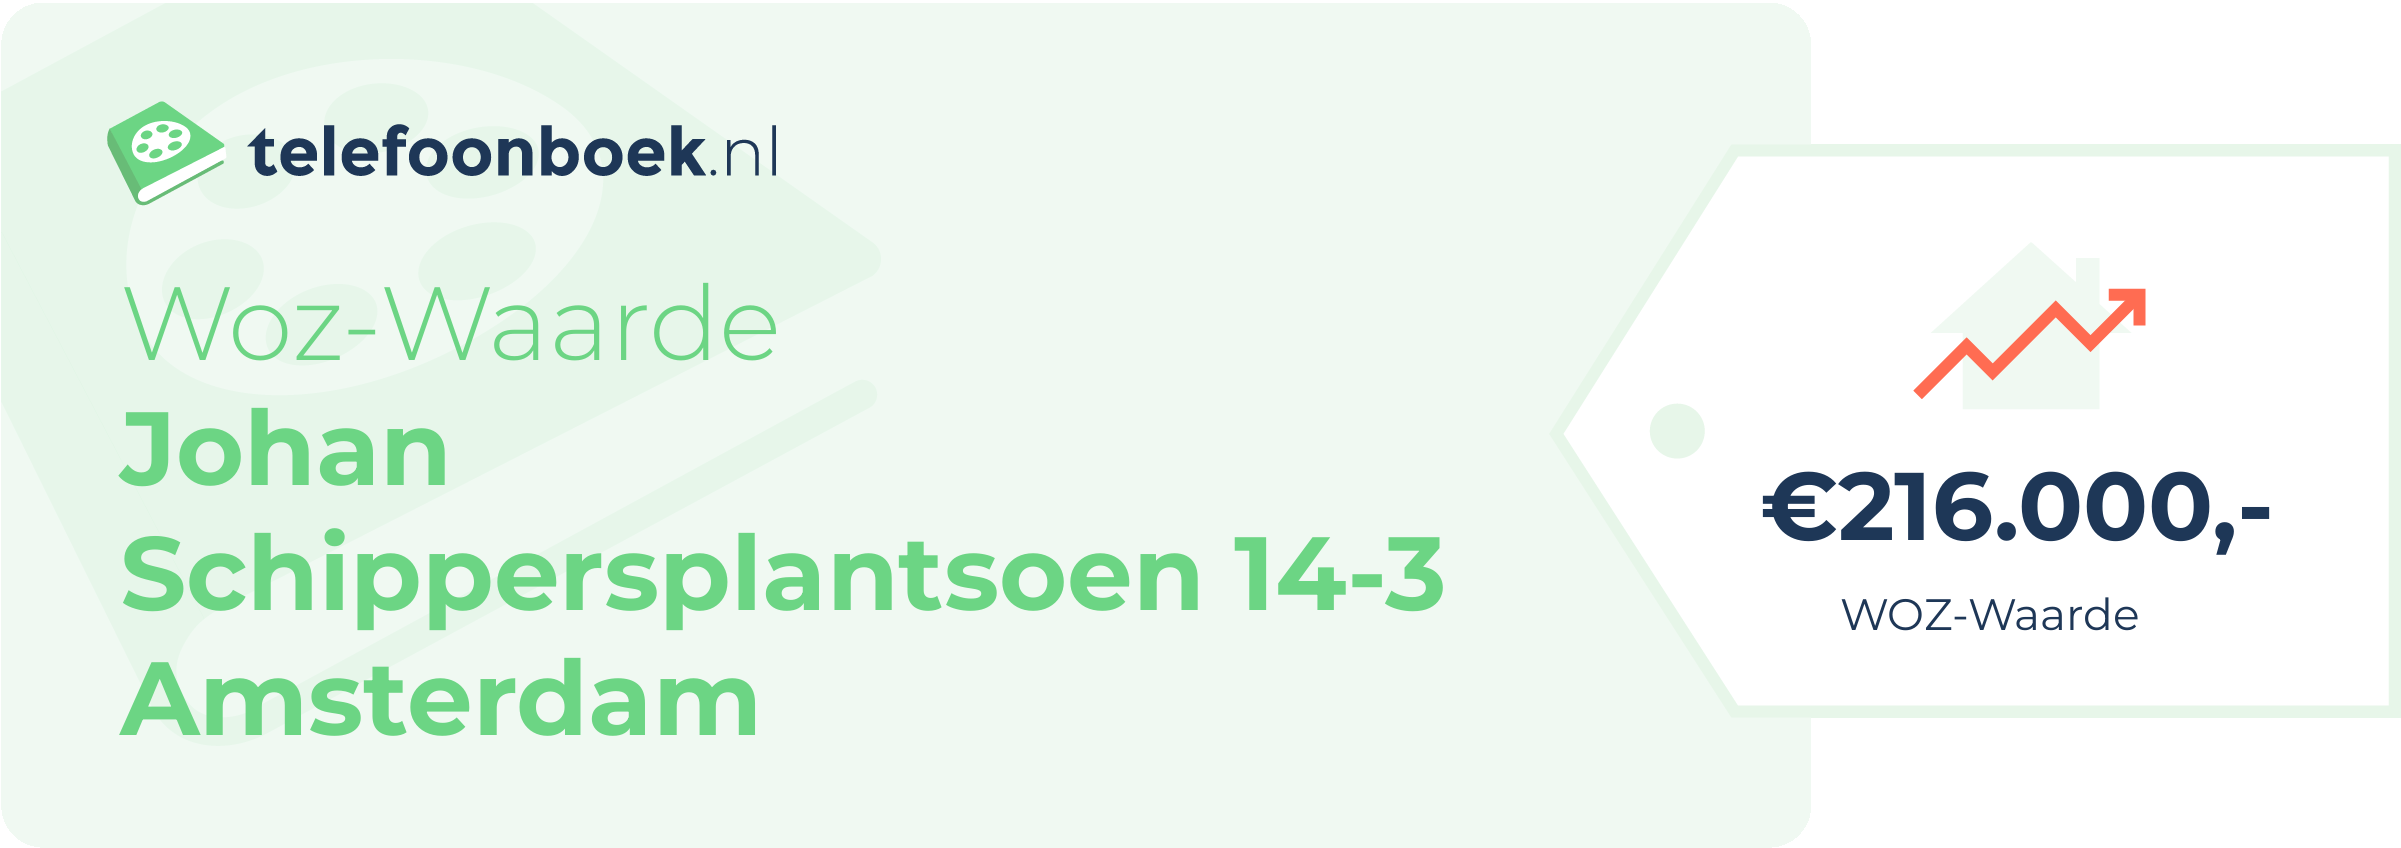 WOZ-waarde Johan Schippersplantsoen 14-3 Amsterdam